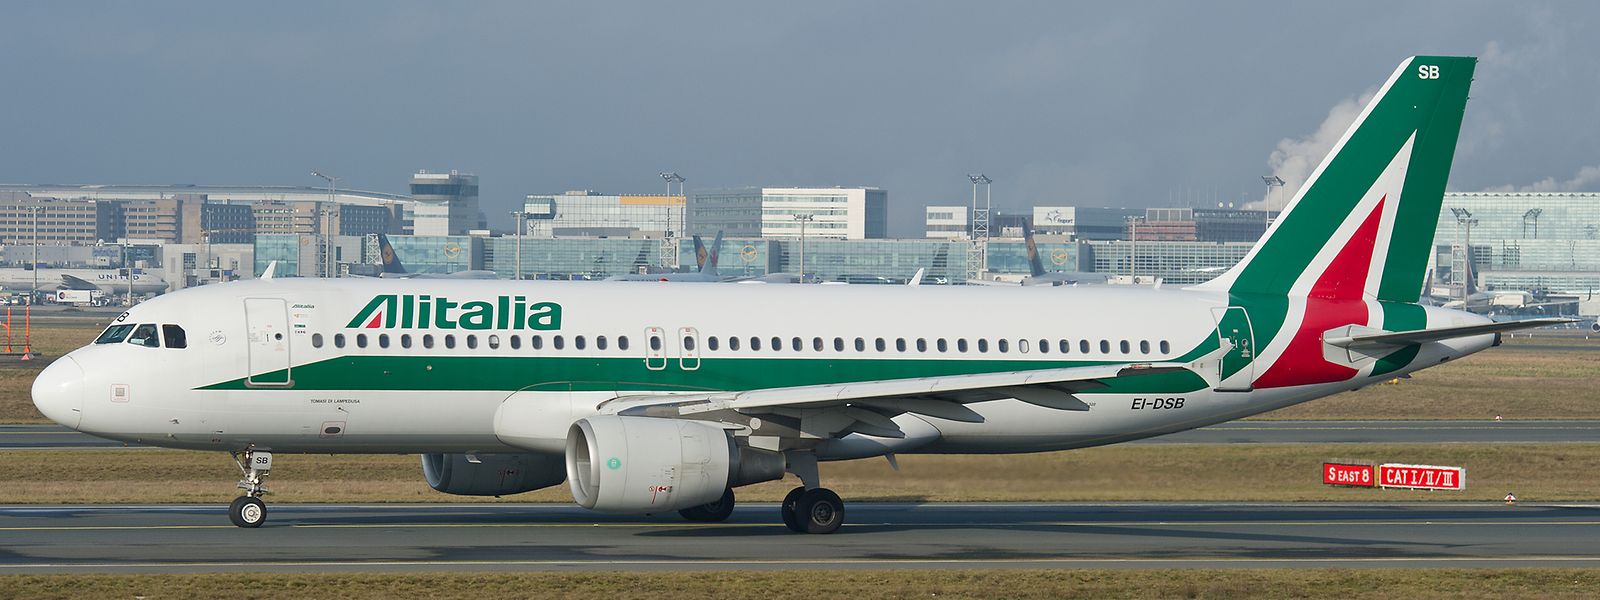 Ein Airbus A320 der italienischen Airline Alitalia rollt auf dem Flughafen Frankfurt zum Start.